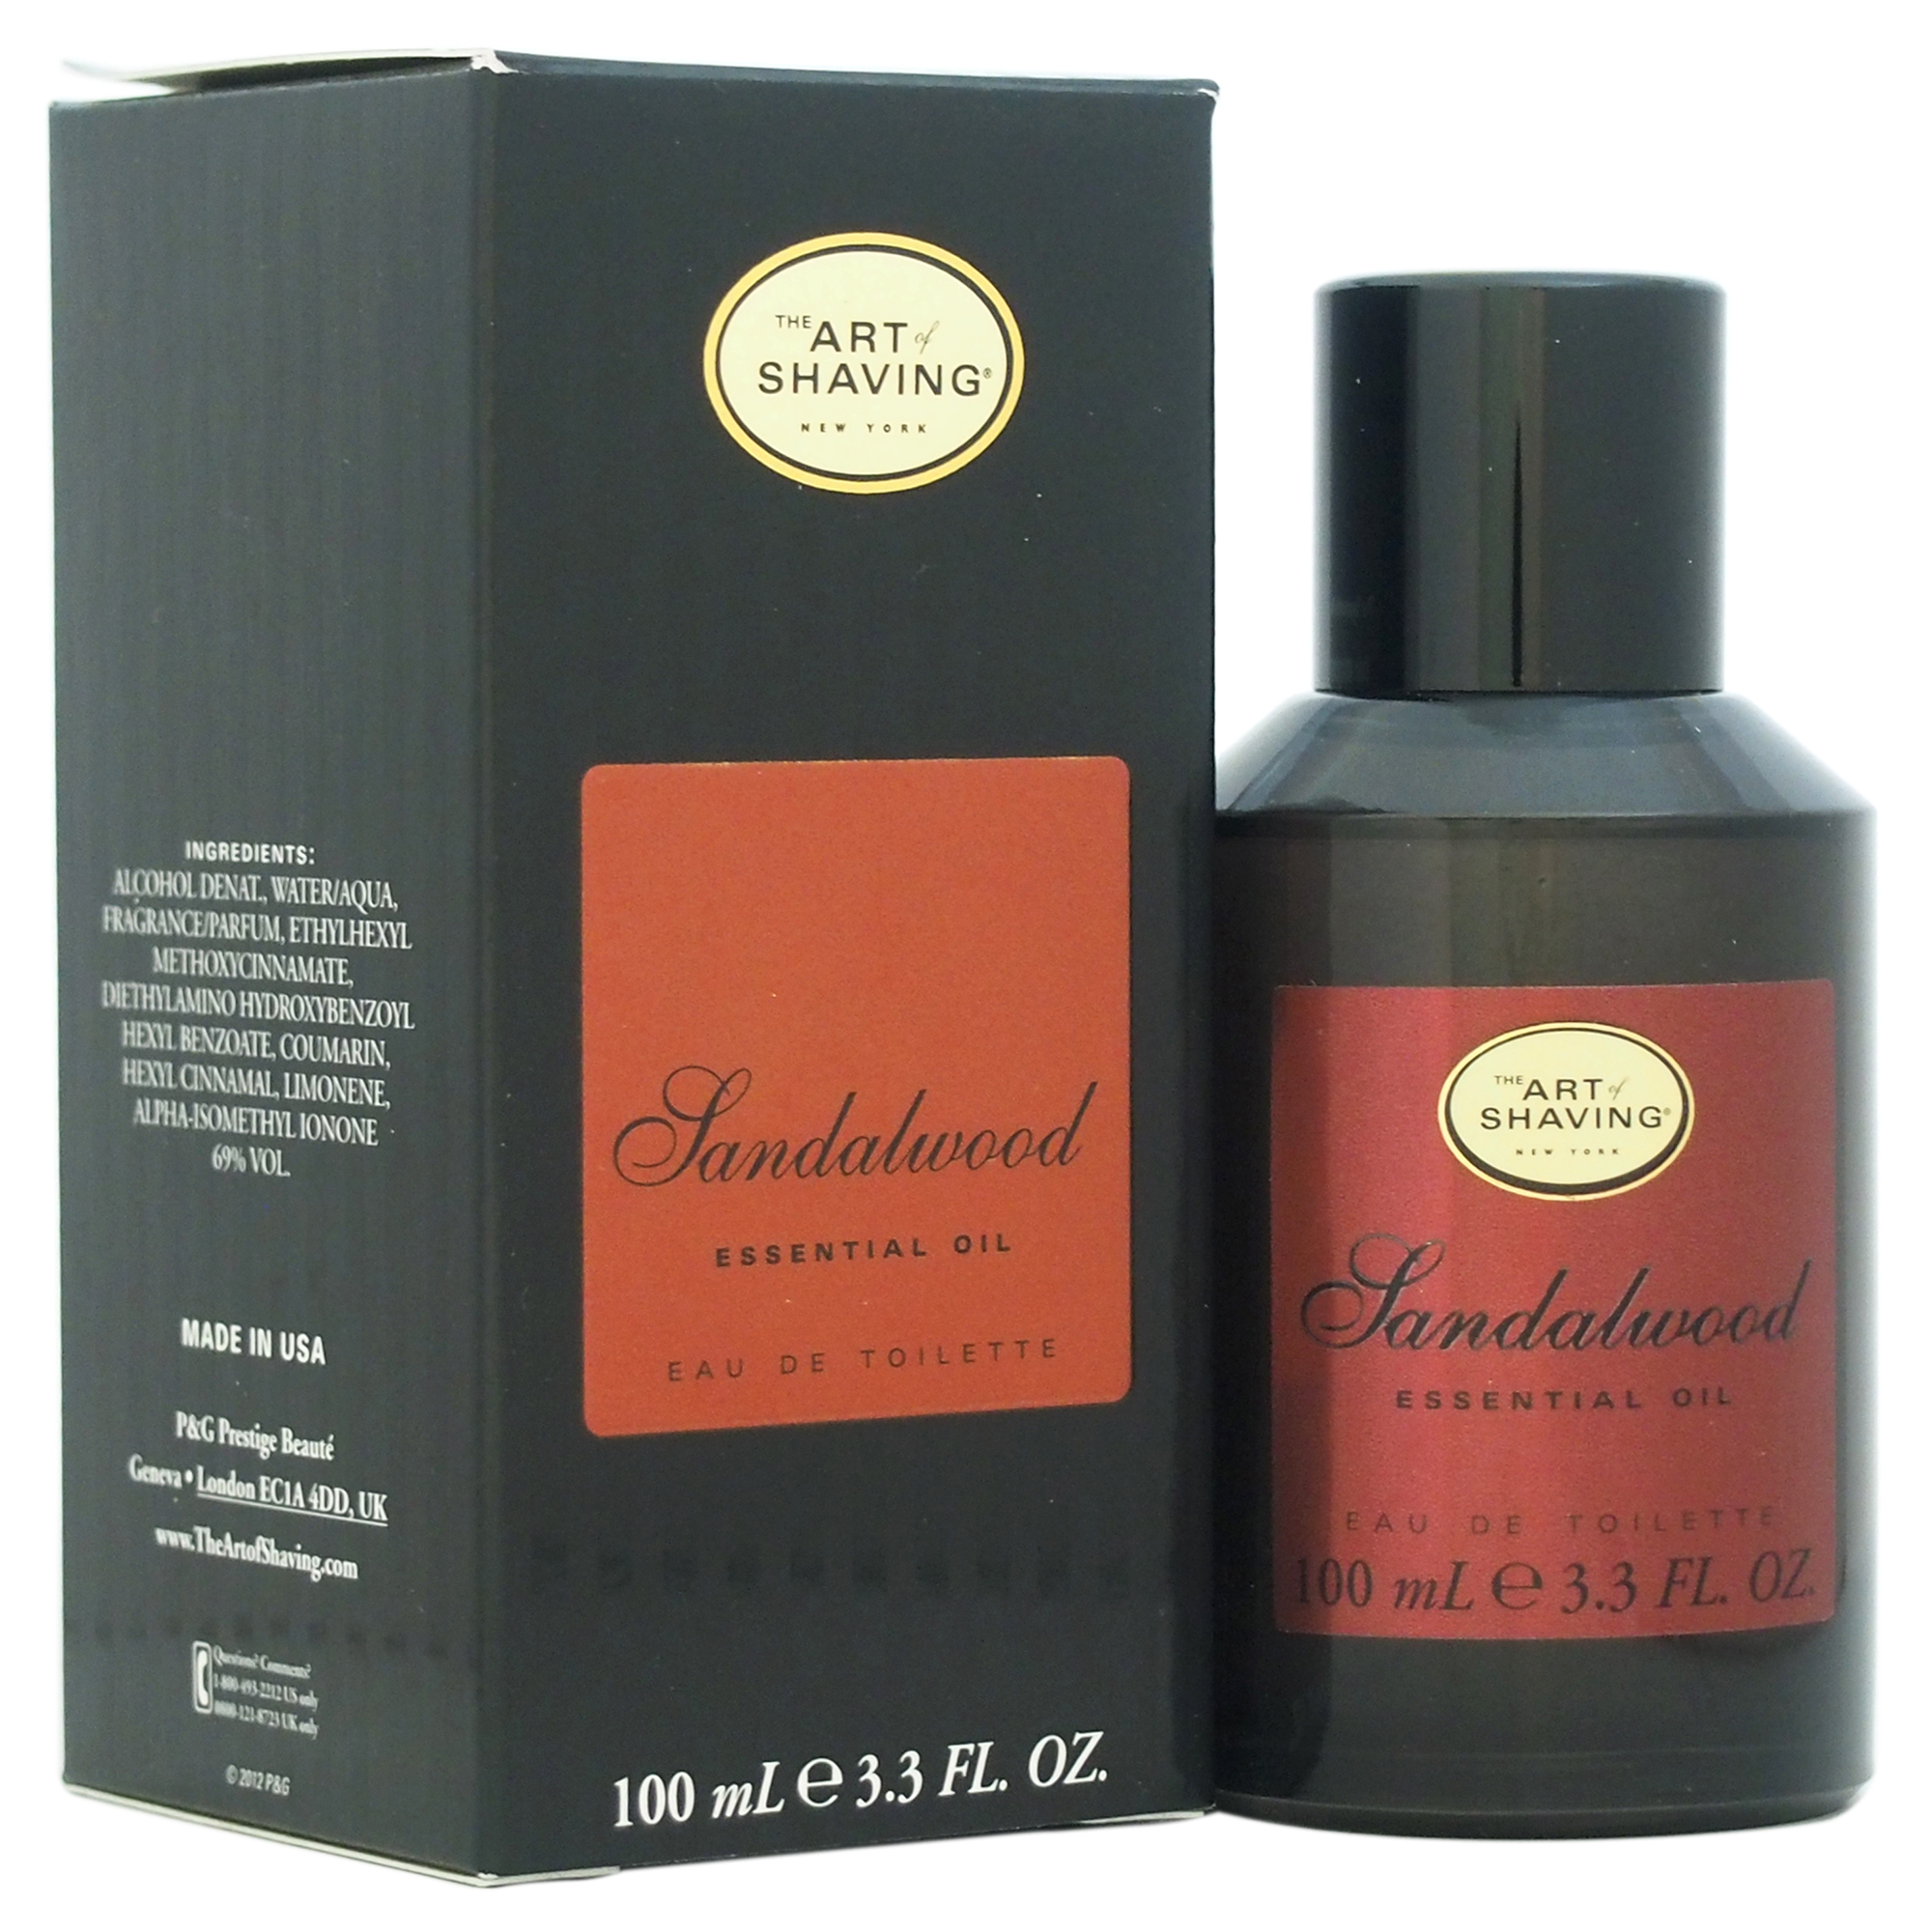 Sandalwood by The Art of Shaving for Men - 3.3 oz EDT Spray